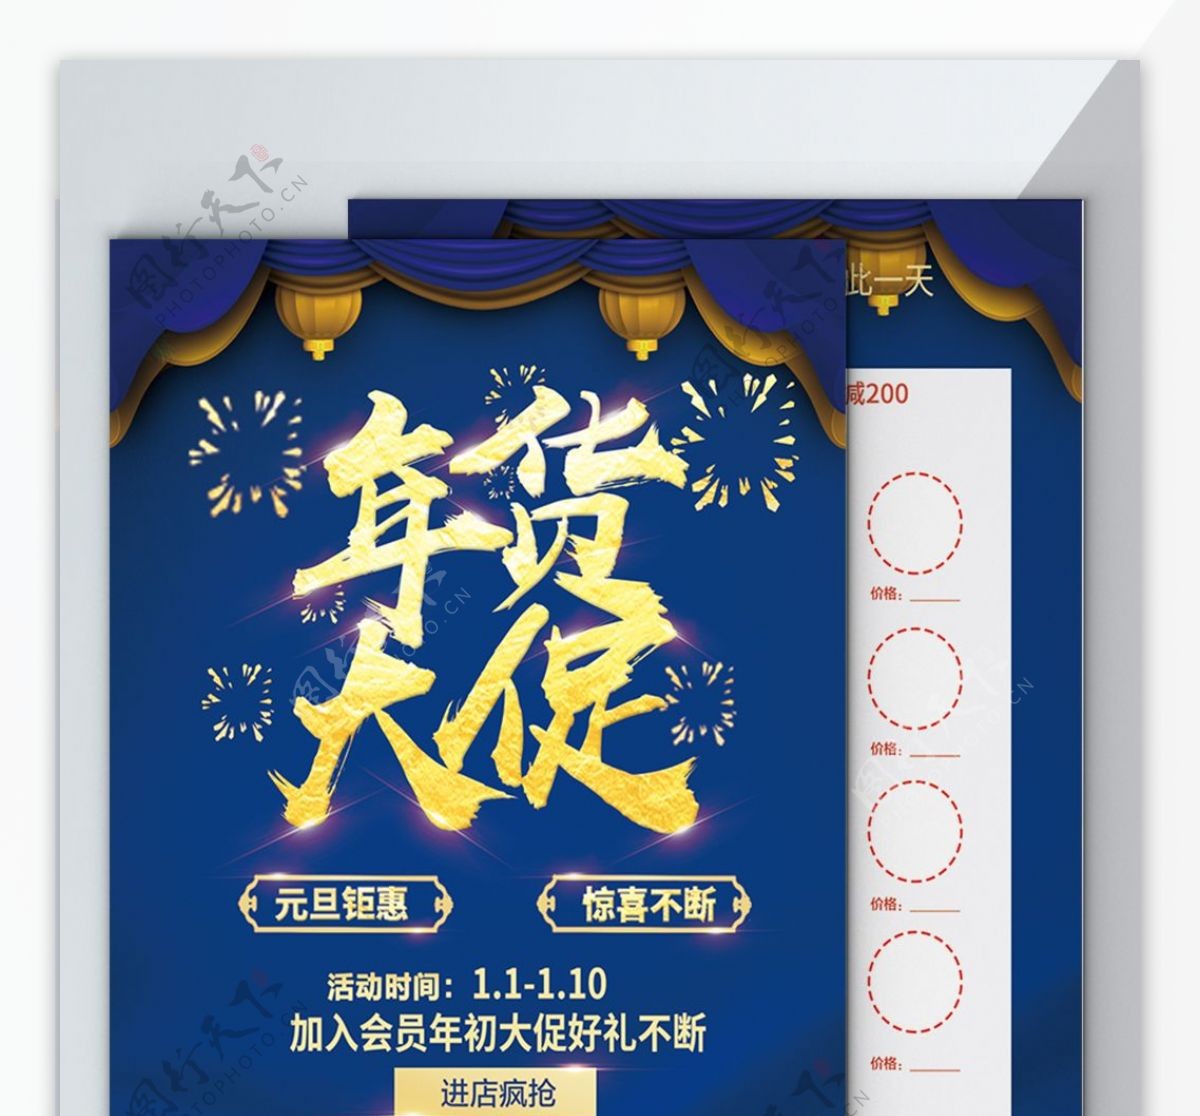 蓝色大气简约精致中国风超市年货大促宣传单